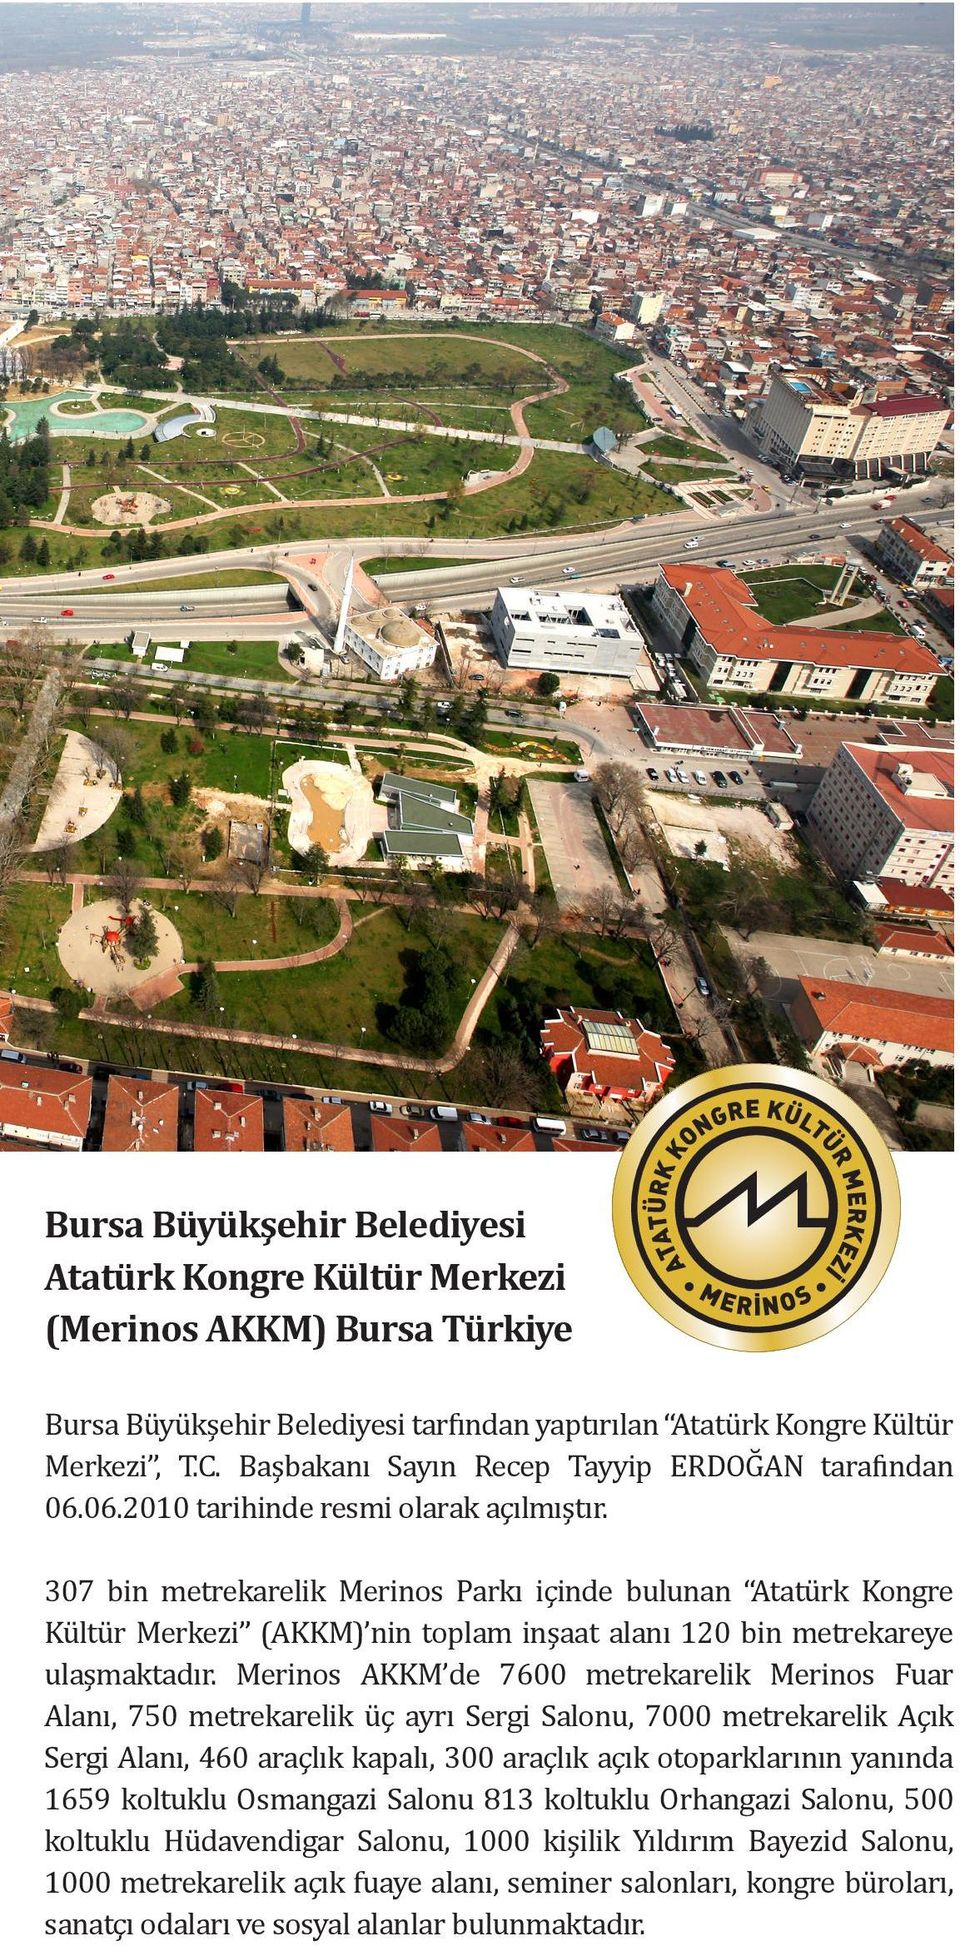 307 bin metrekarelik Merinos Parkı içinde bulunan Atatürk Kongre Kültür Merkezi (AKKM) nin toplam inşaat alanı 120 bin metrekareye ulaşmaktadır.